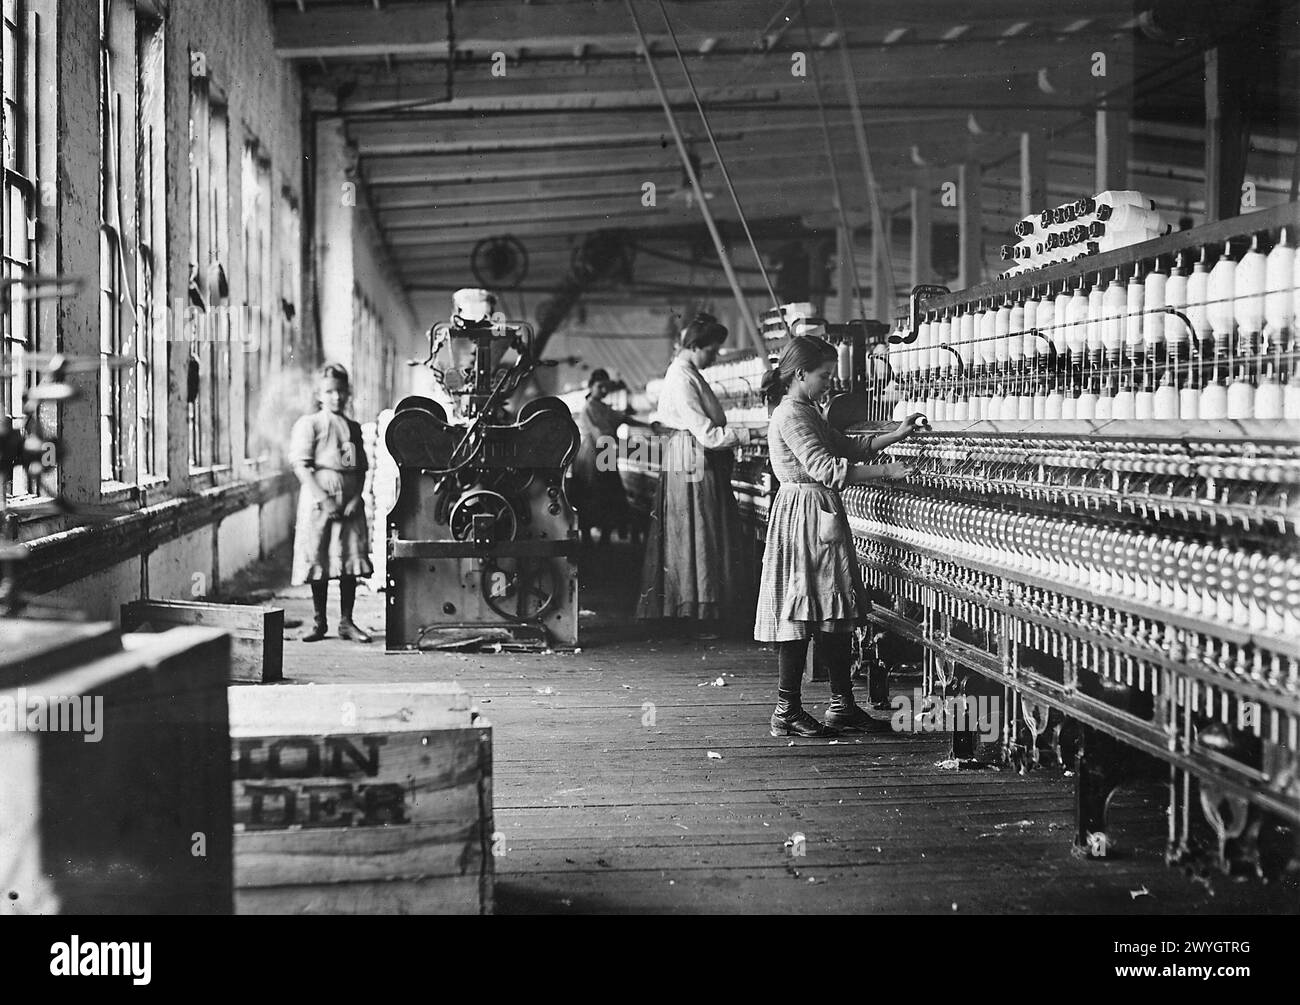 Zwei der jungen Spinner in Catawba Cotton Mills. Newton, N.C., Dezember 1908. > Vintage American Photography 1910s. Untergeordnetes Arbeitsprojekt. Quelle: Lewis Hines Stockfoto